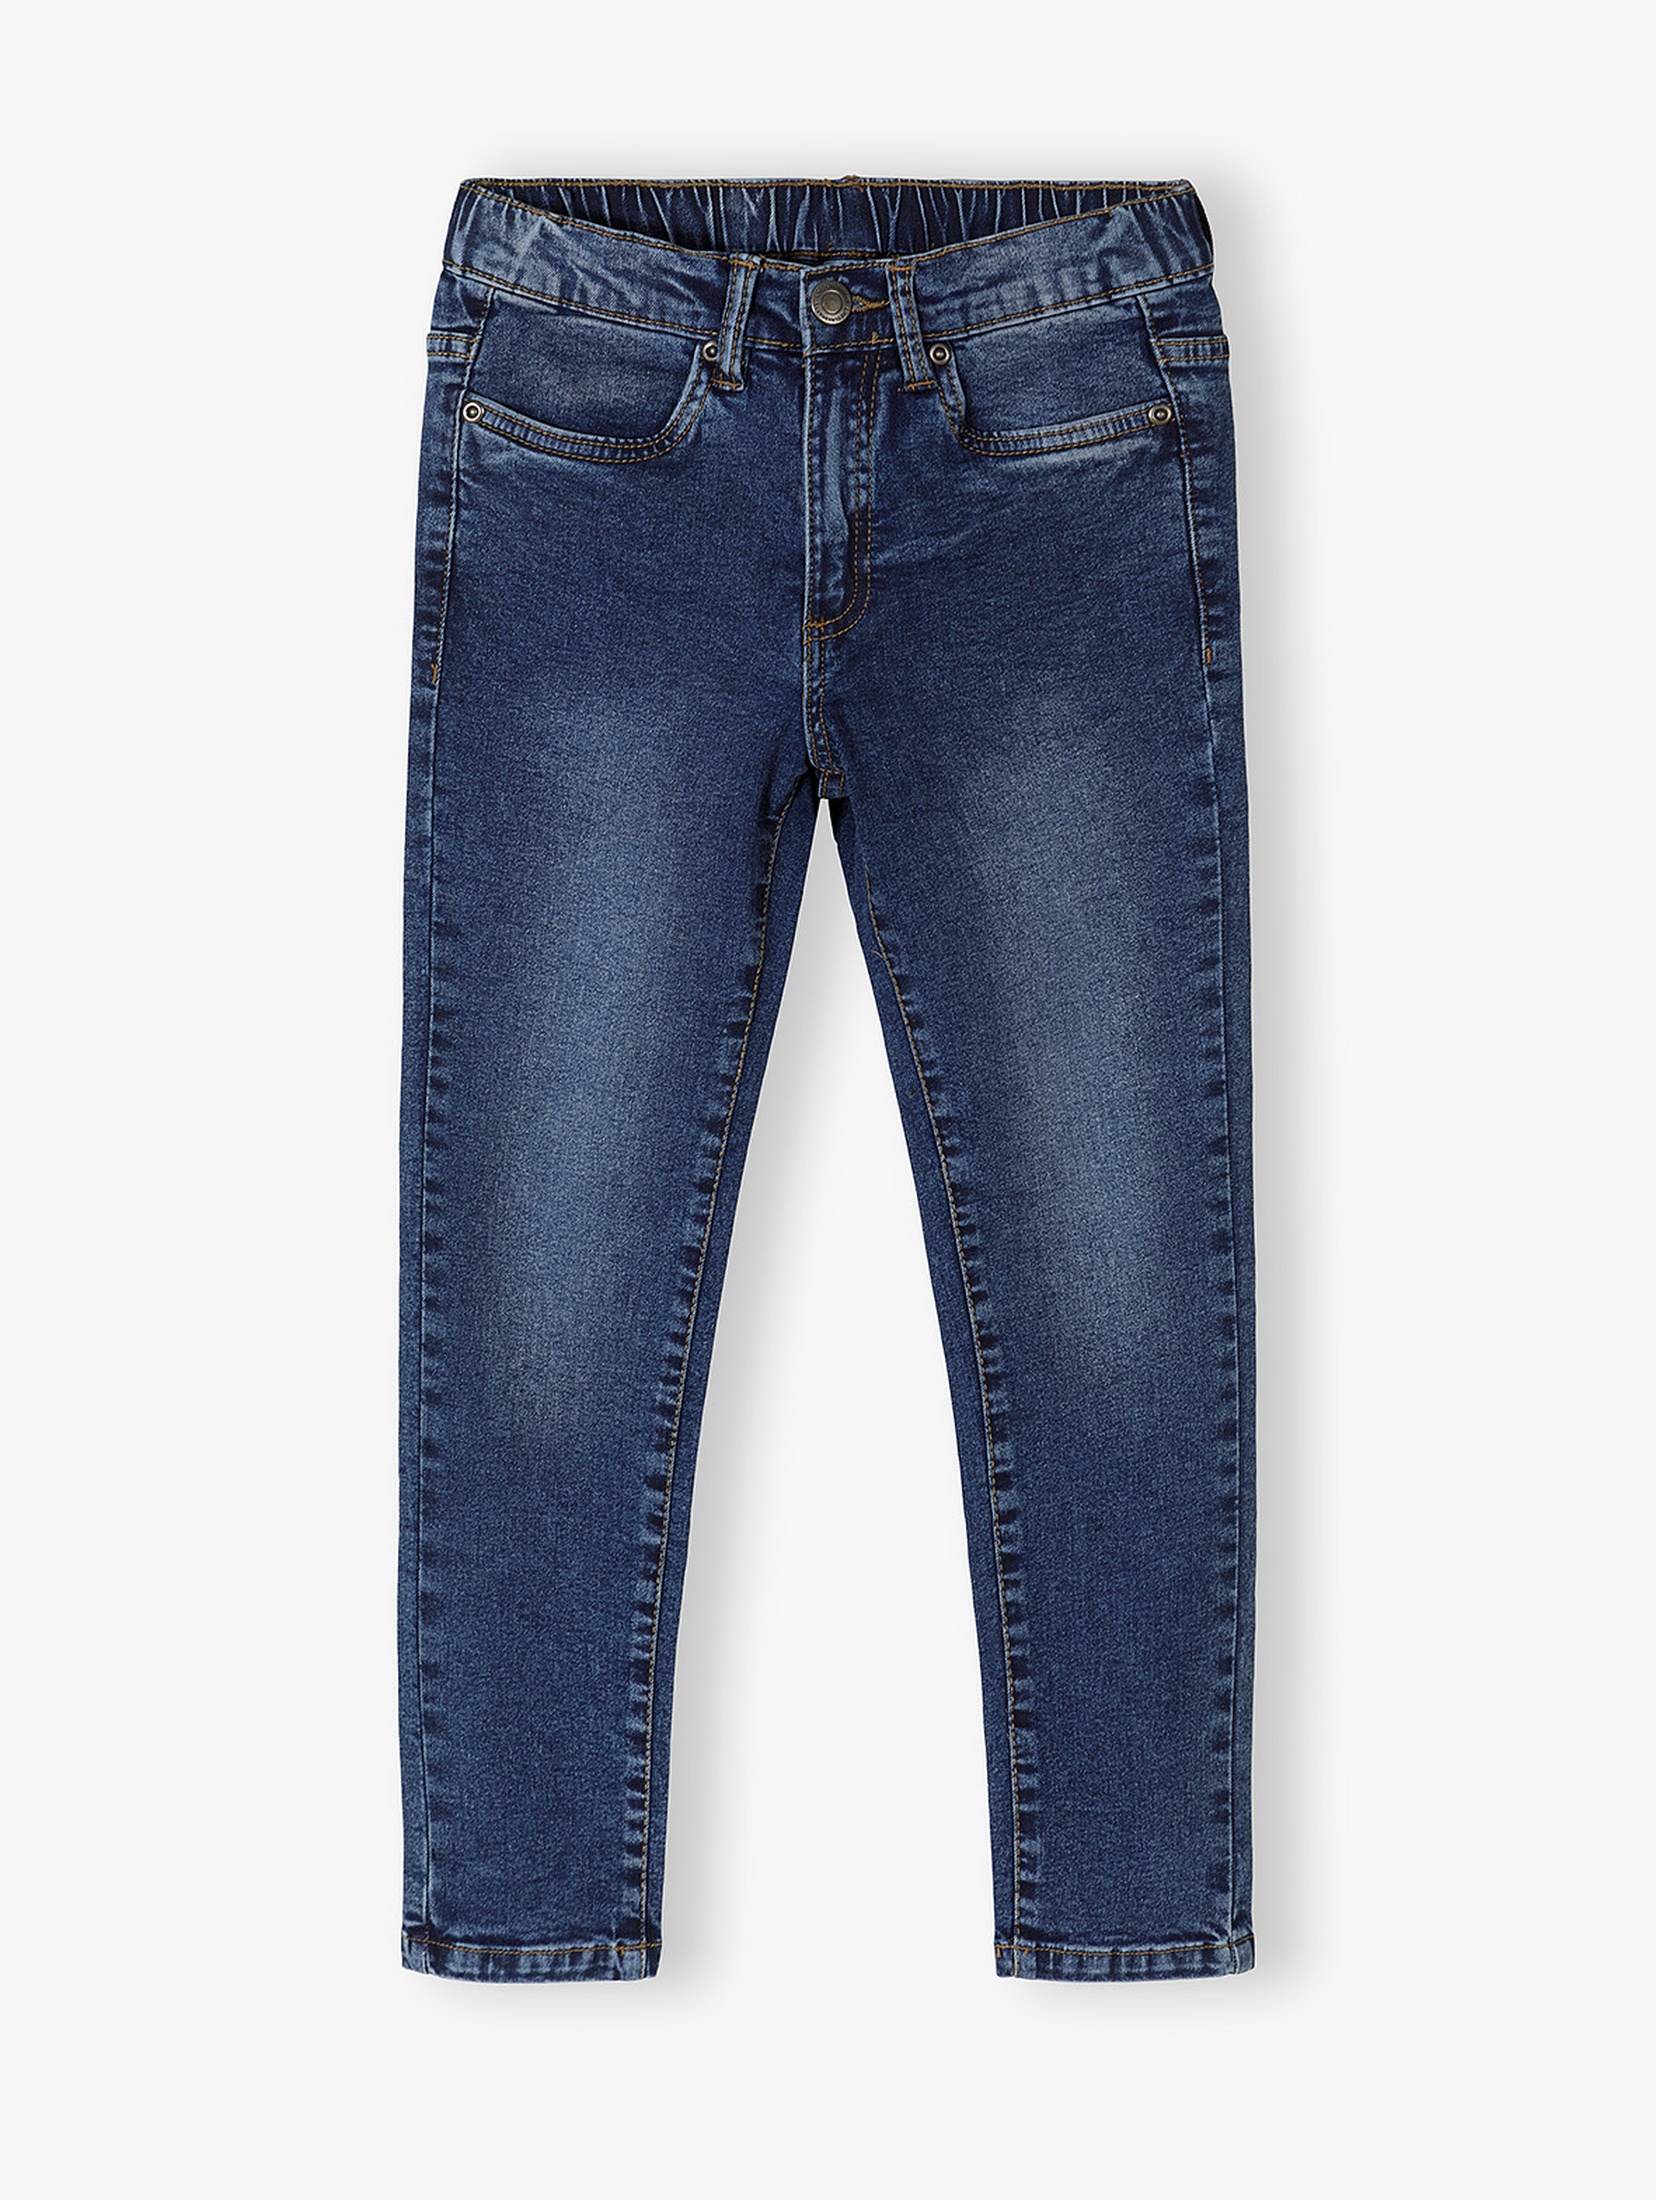 Granatowe spodnie jeansowe slim dla chłopca - Lincoln&Sharks